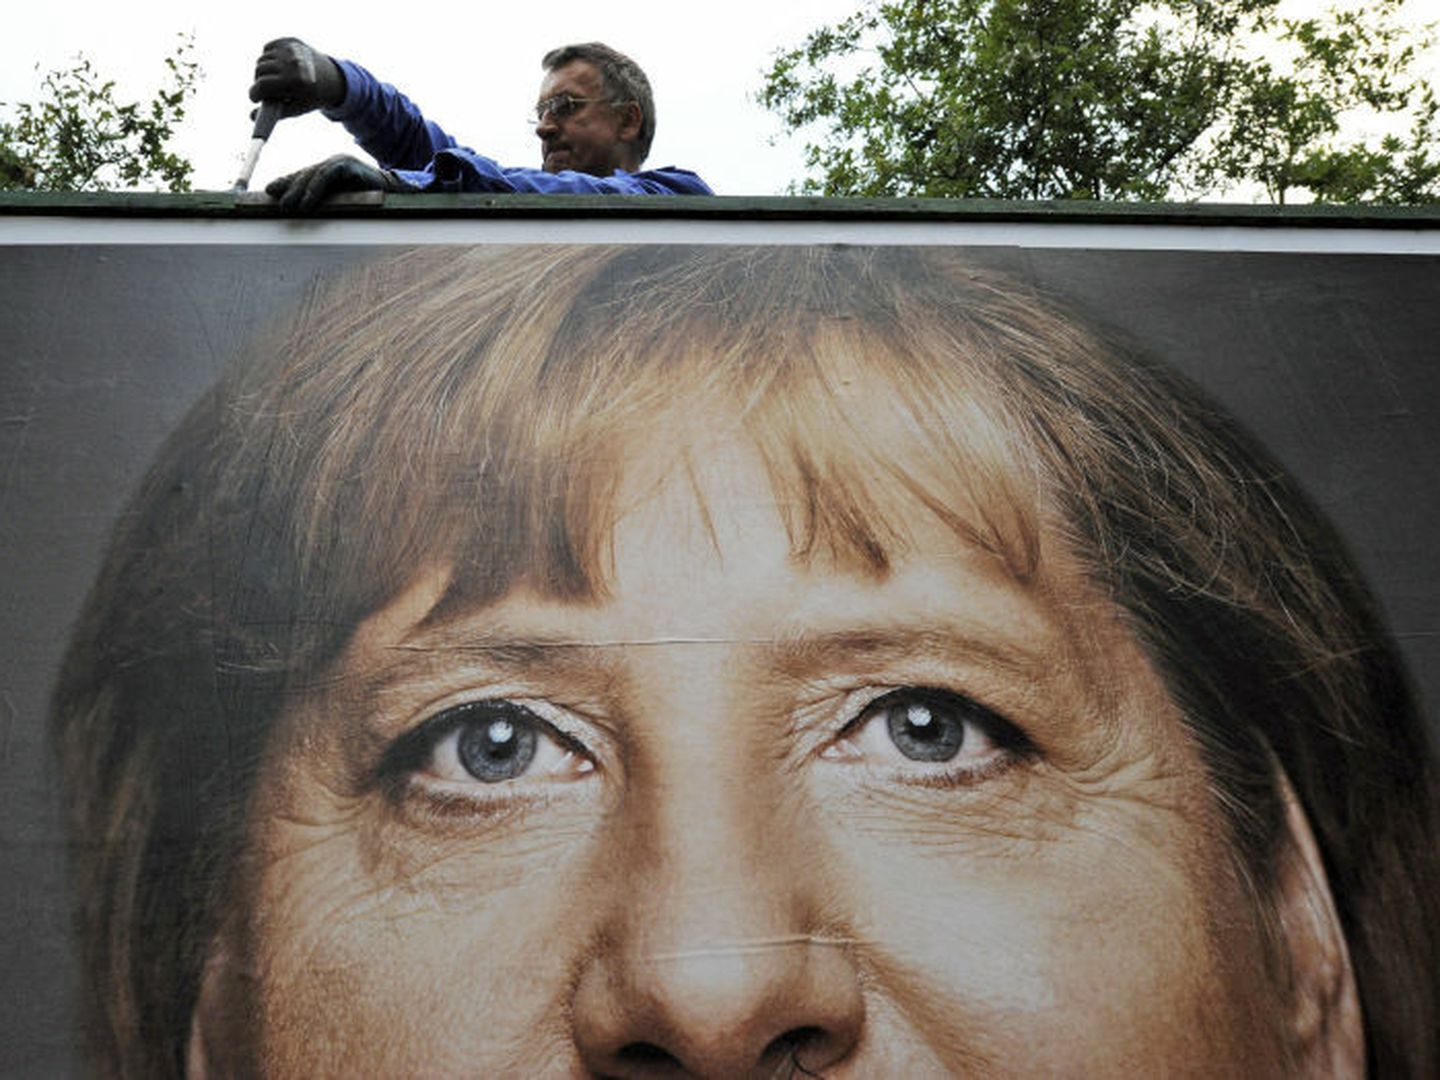 Un trabajador retira un cartel electoral con el rostro de la canciller en Itzehoe, Alemania (Efe).